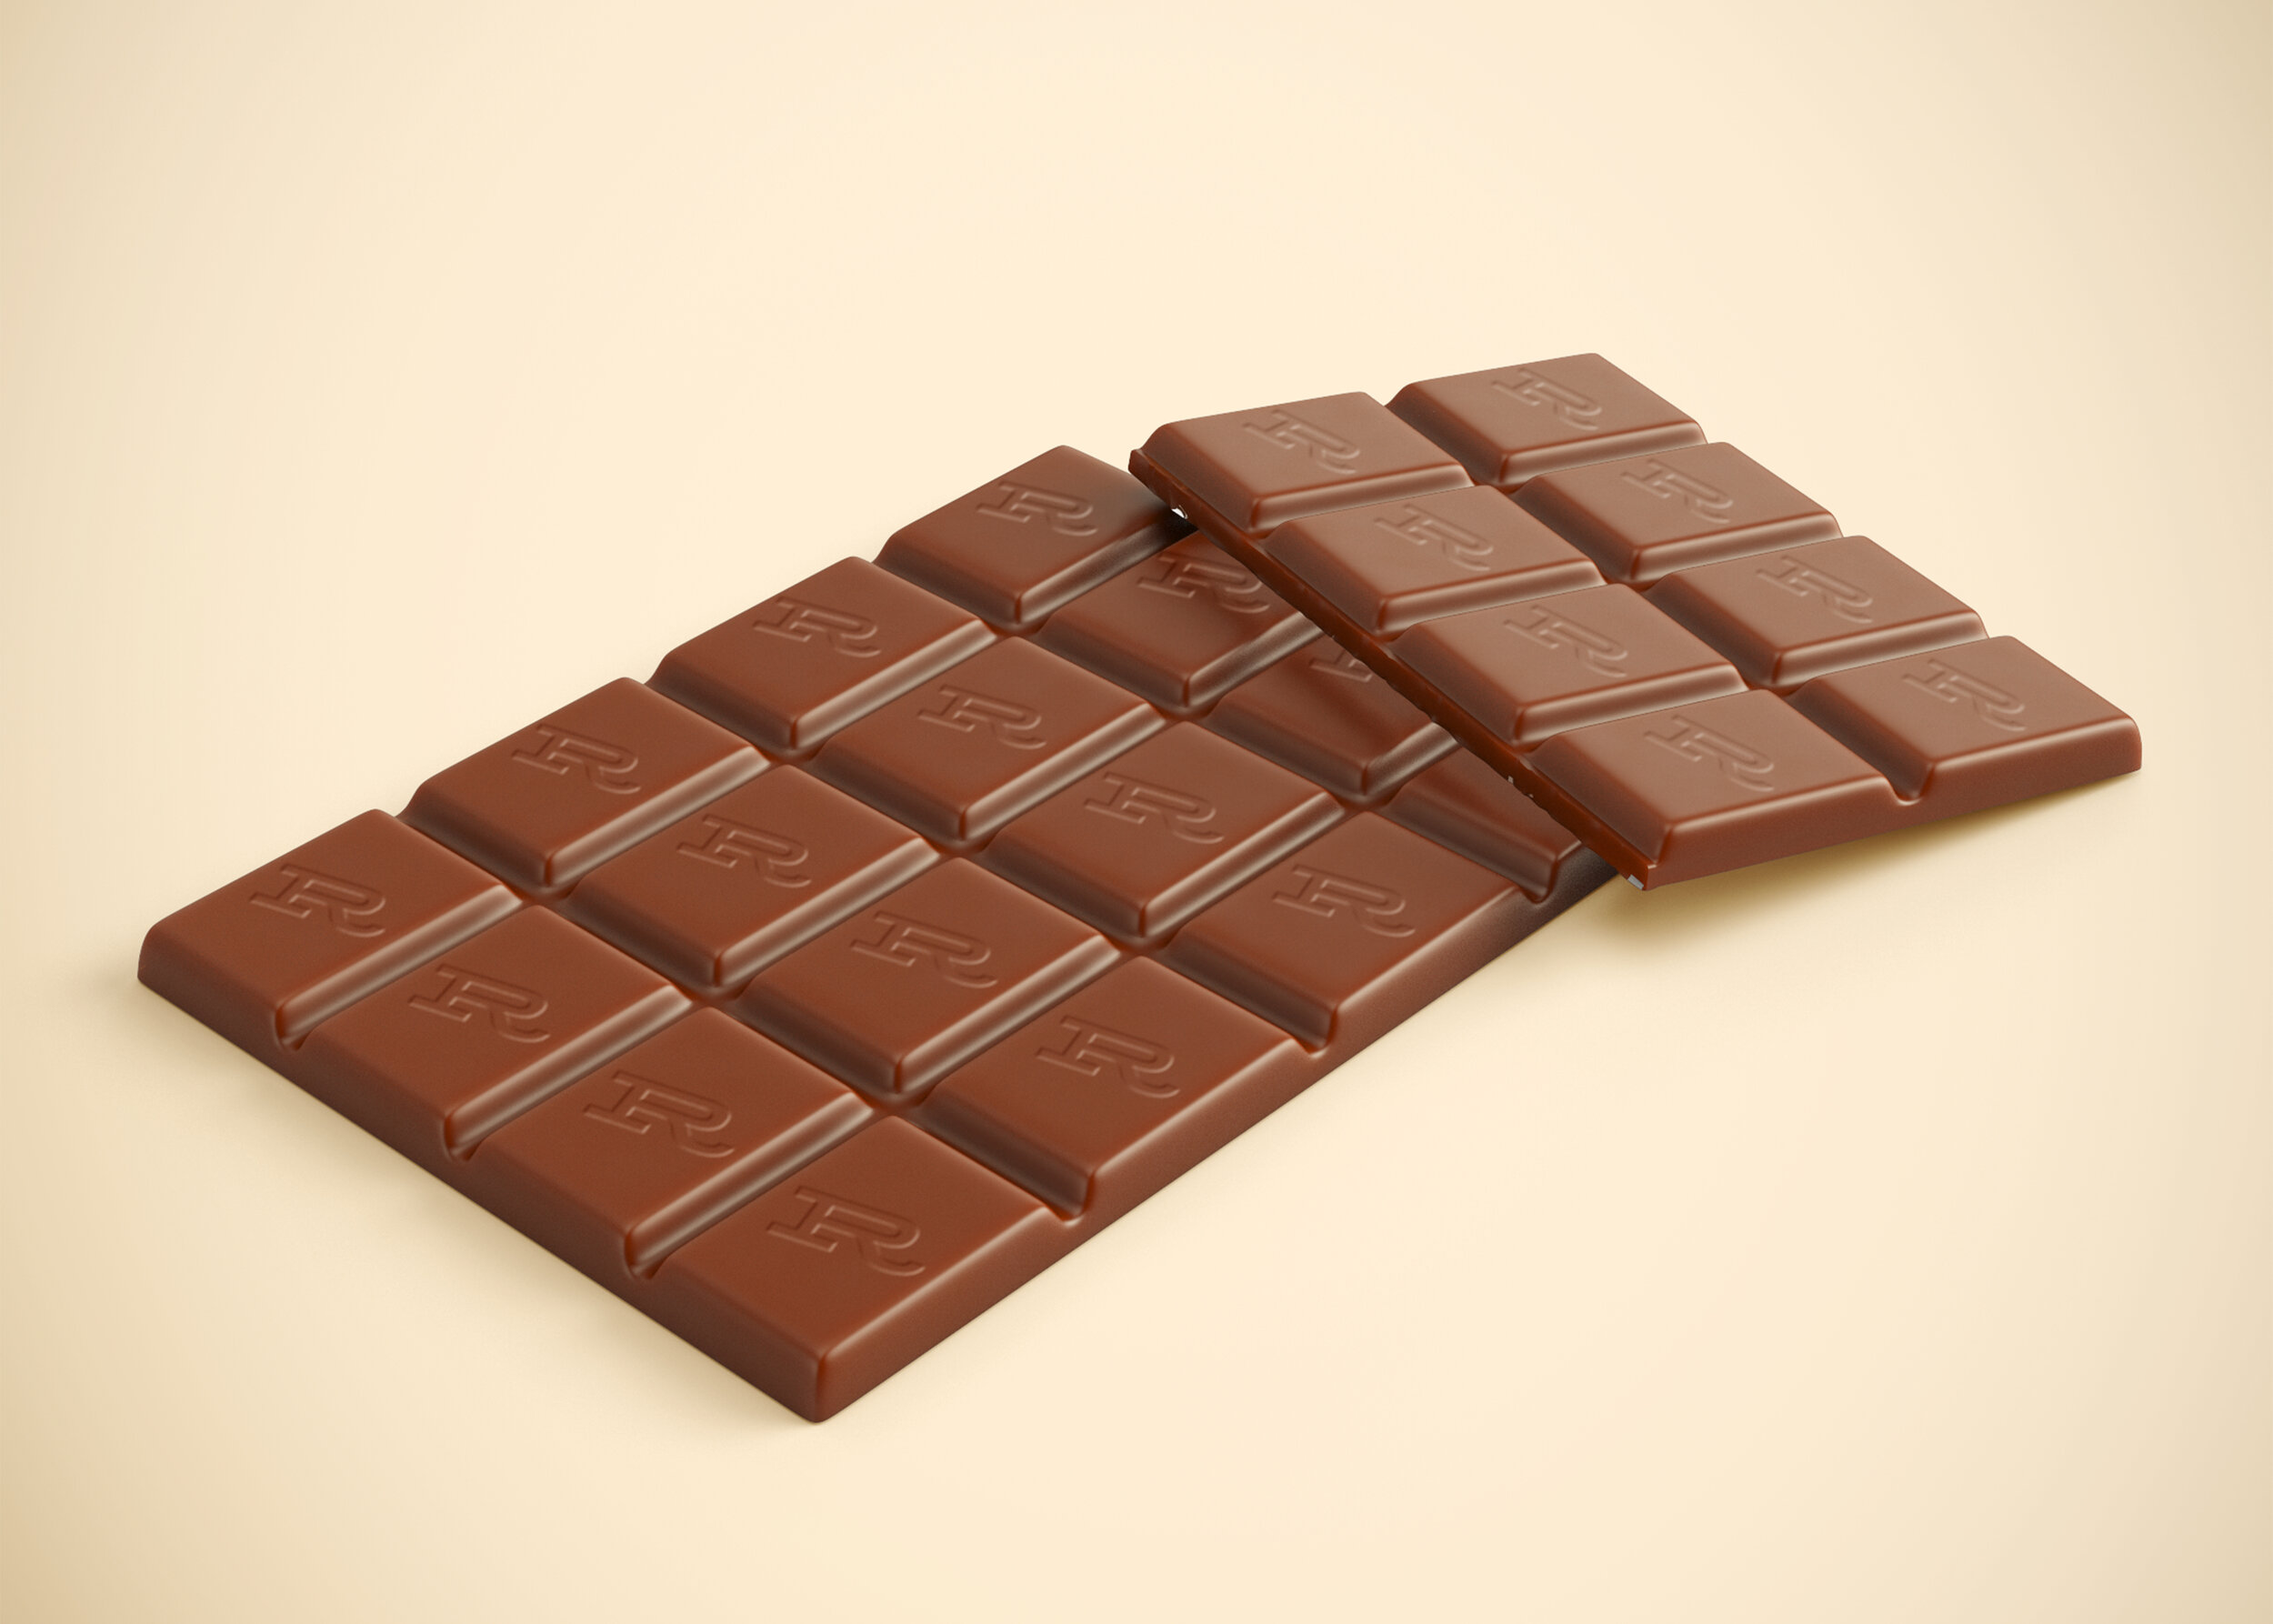 Бесплатный шоколад. Шоколад плиточный мокап. Плитка шоколада мокап. Шоколадная плитка. Плитка шоколада в обертке.